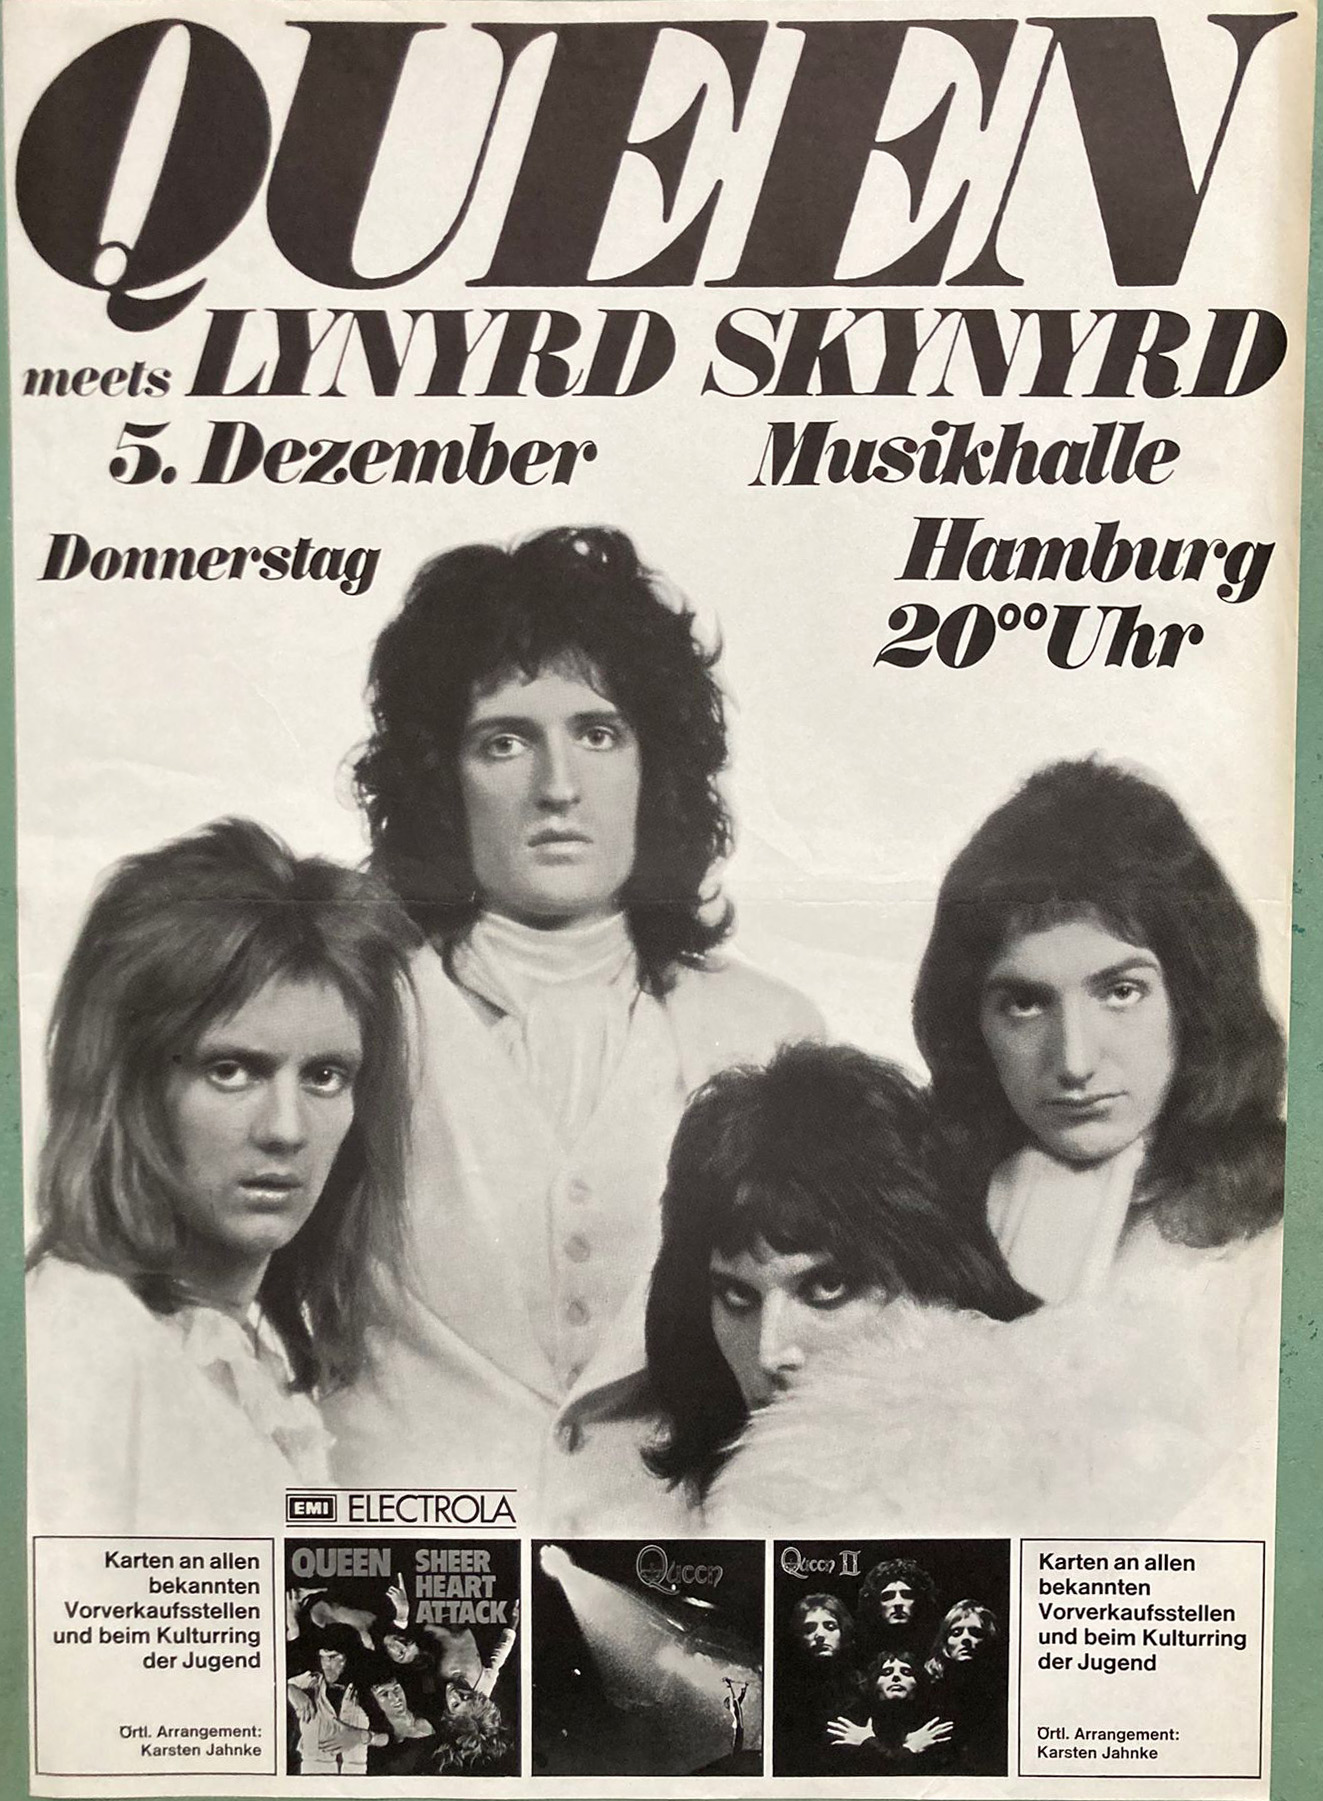 Queen in Hamburg on 05.12.1974